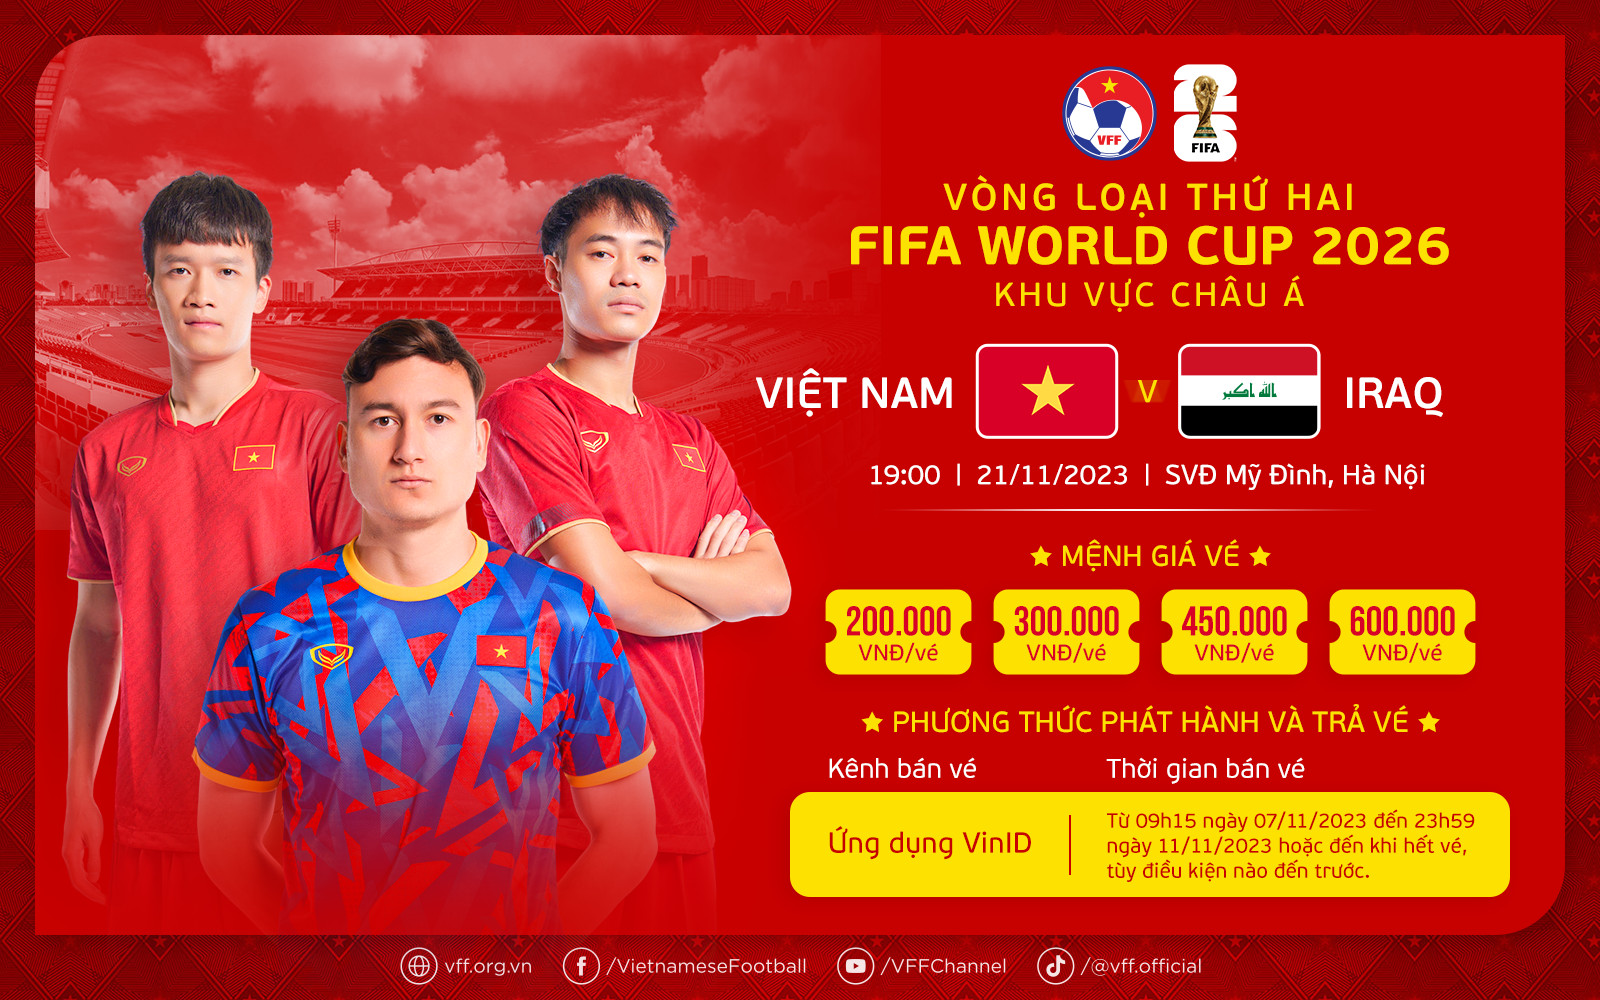 Mua vé xem đội tuyển Việt Nam đấu Iraq ở vòng loại World Cup bằng cách nào? - Ảnh 1.